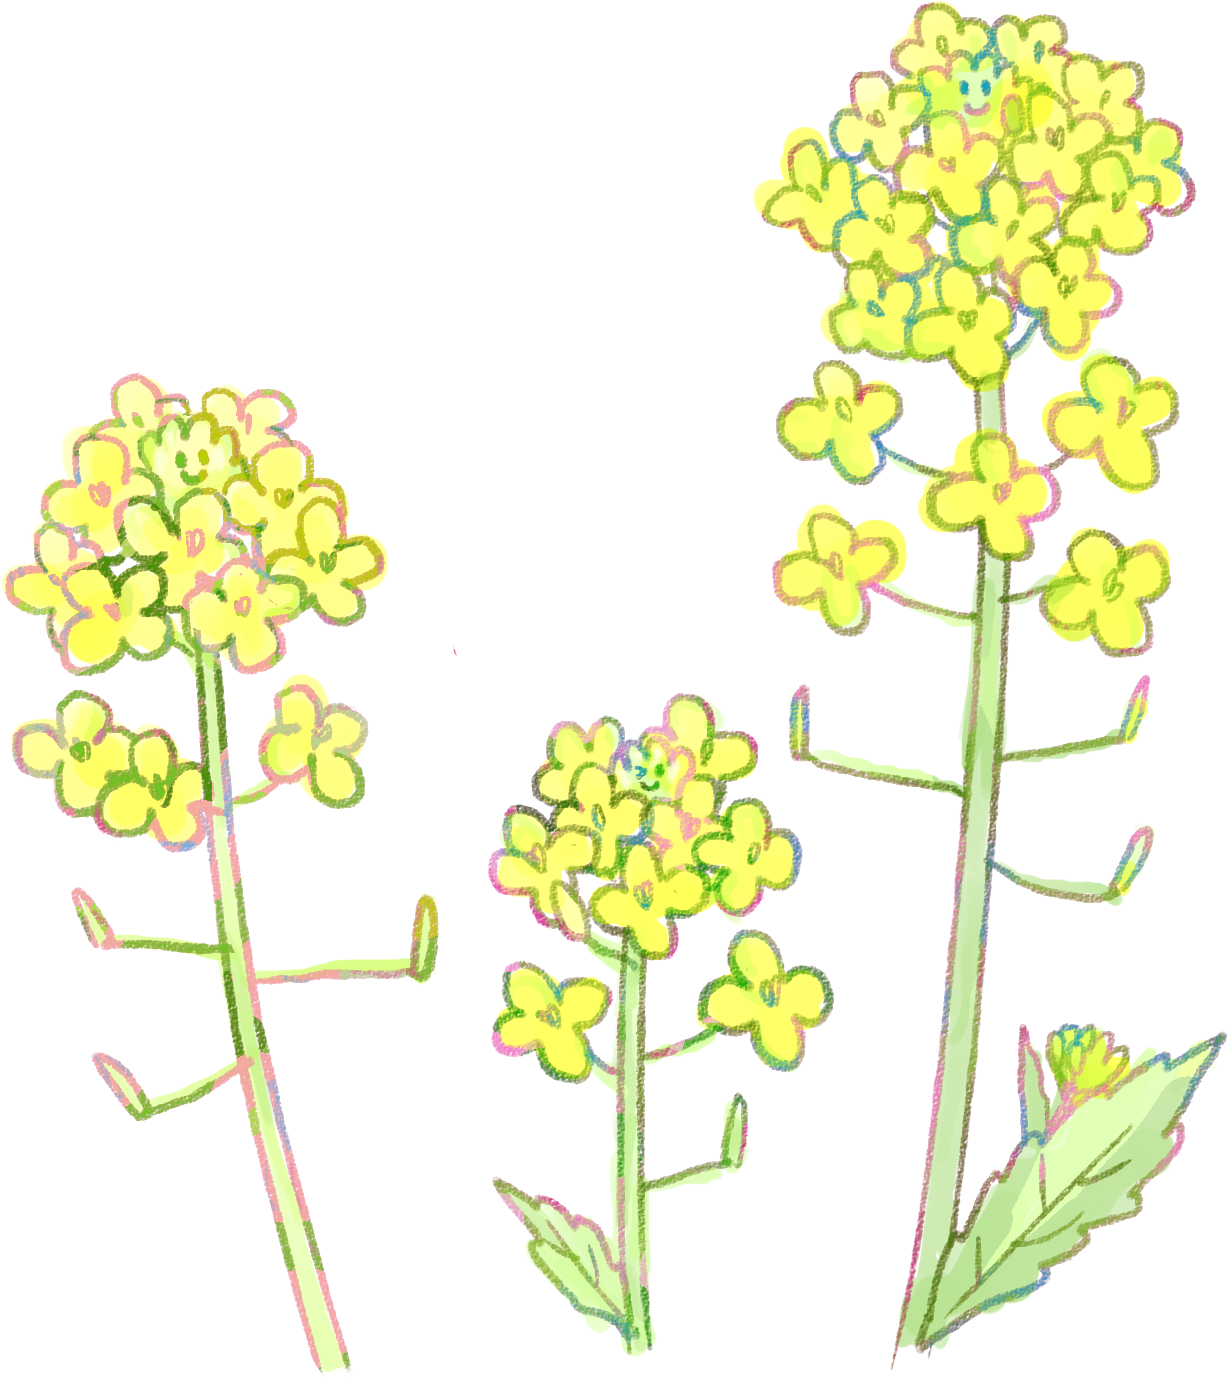 菜の花イラスト - 菜の花 3 月 イラスト (1229x1378)